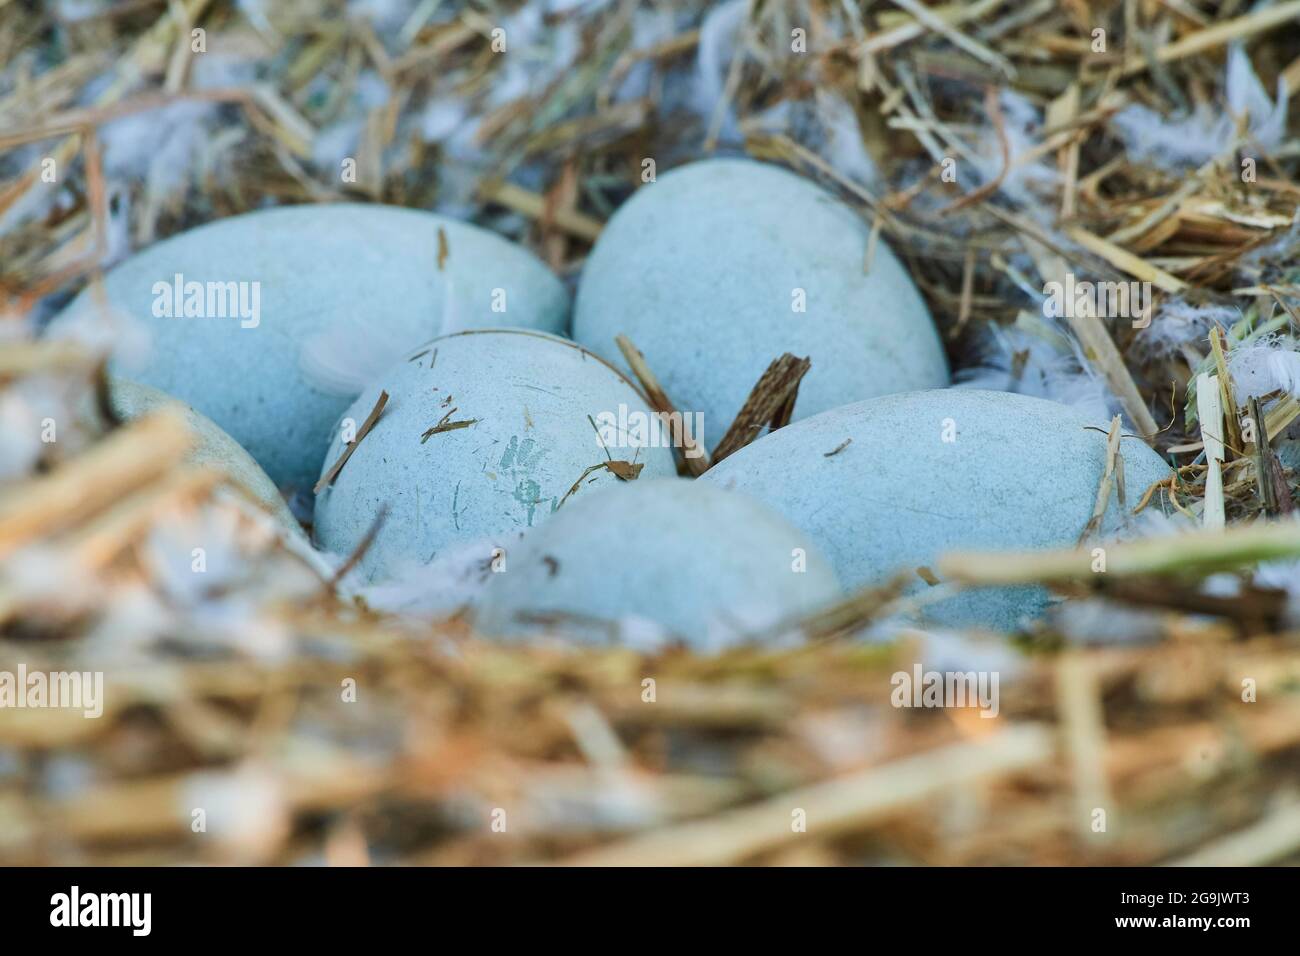 Stumme Schwan (Cygnus olor) Eier in einem vogelnest, Frankonia, Bayern, Deutschland Stockfoto